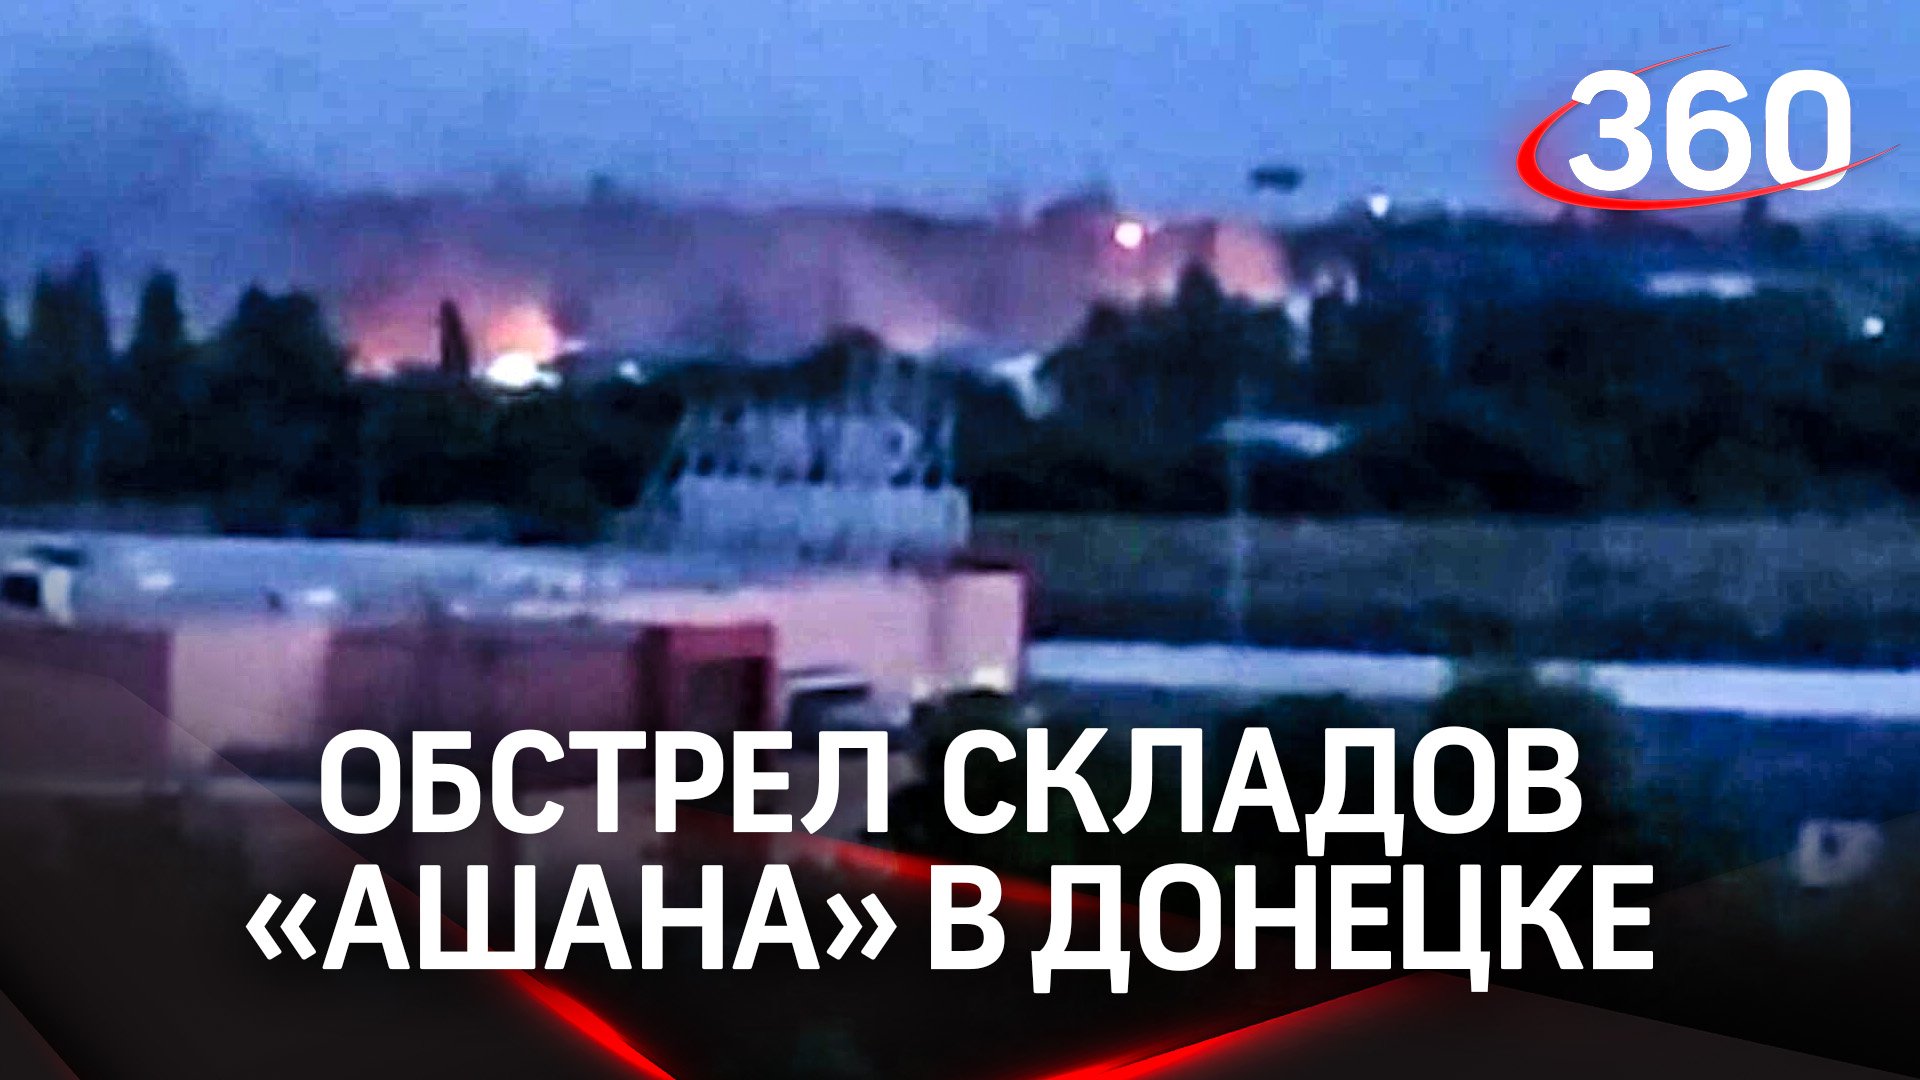 Огонь и взрывы: склады «Ашана» в Донецке обстреляли украинские войска - СМИ